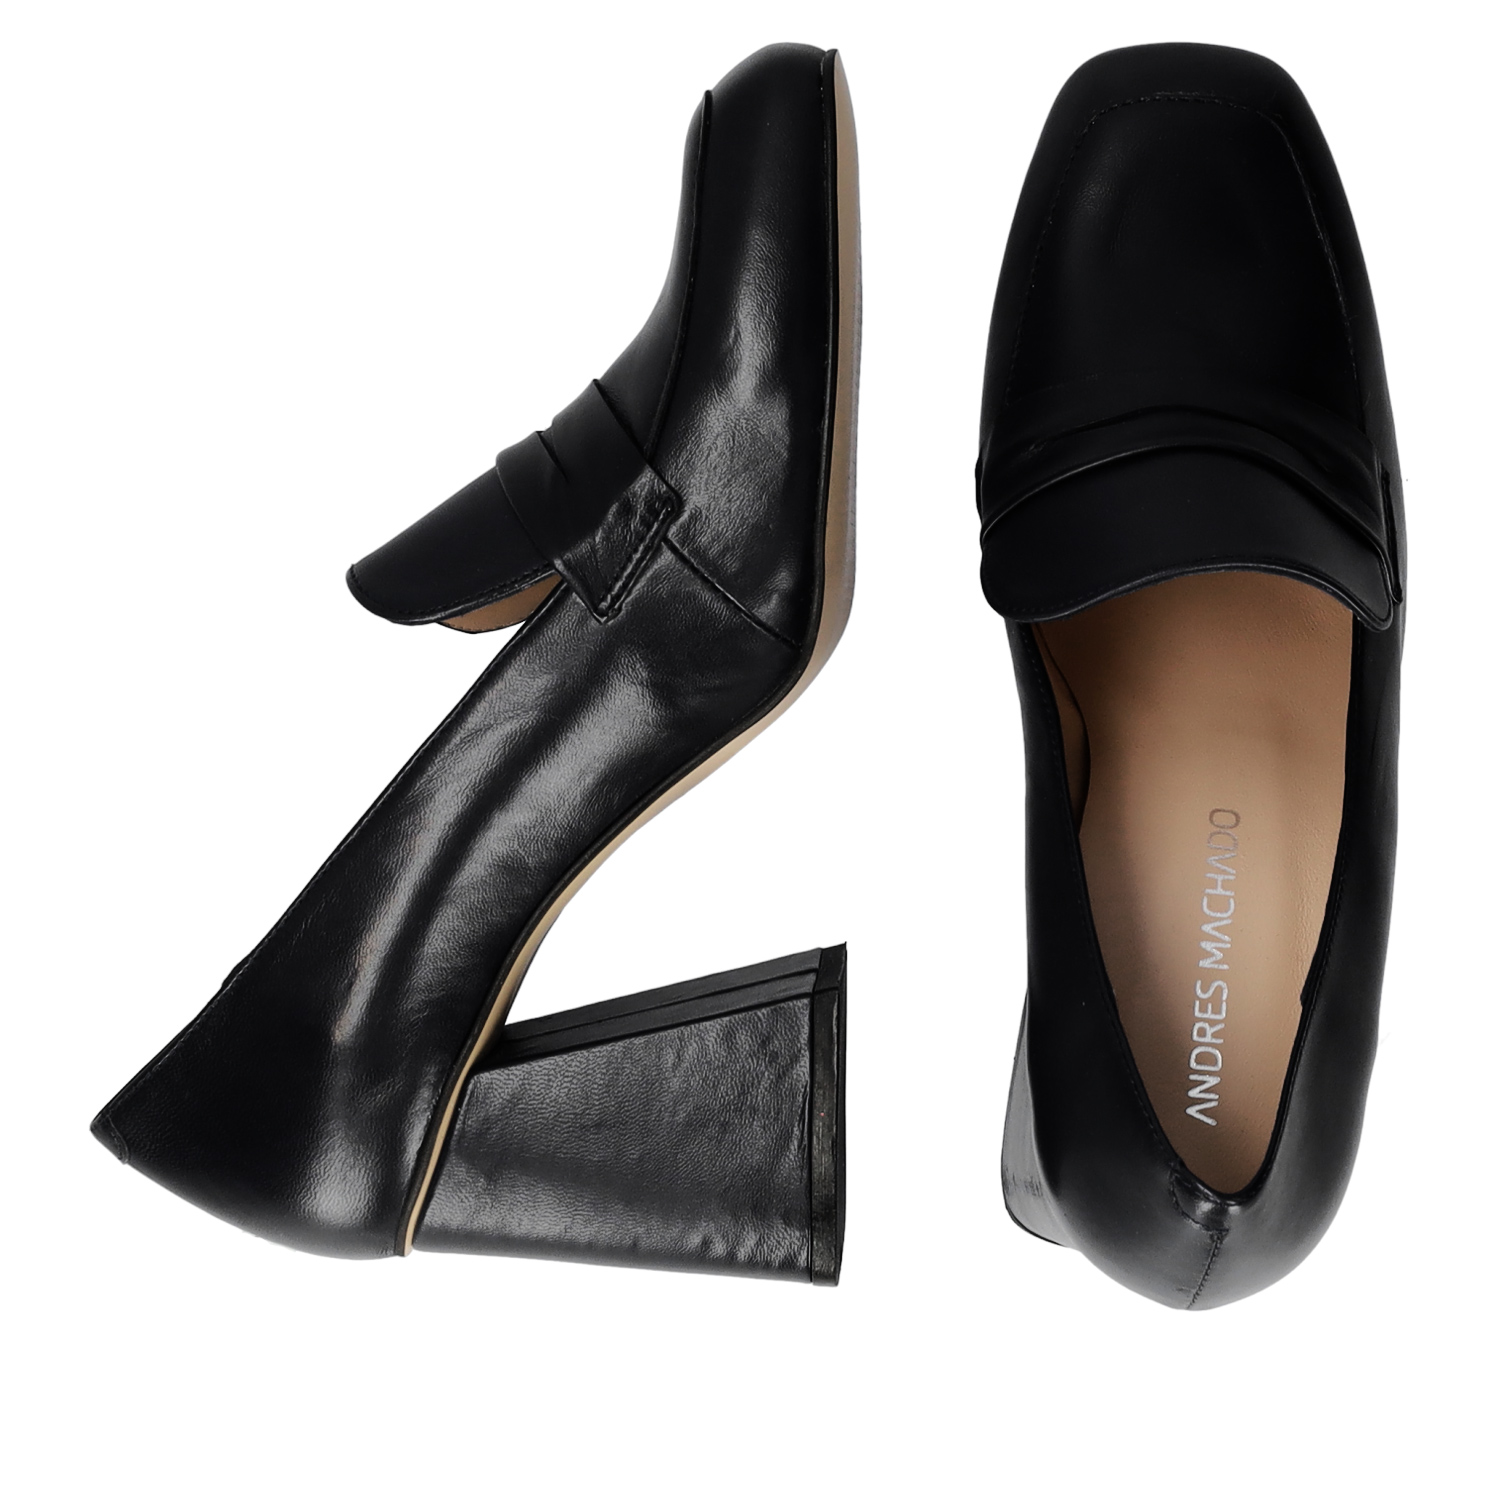 Zapato de estilo mocasín con tacón en piel de color negro 